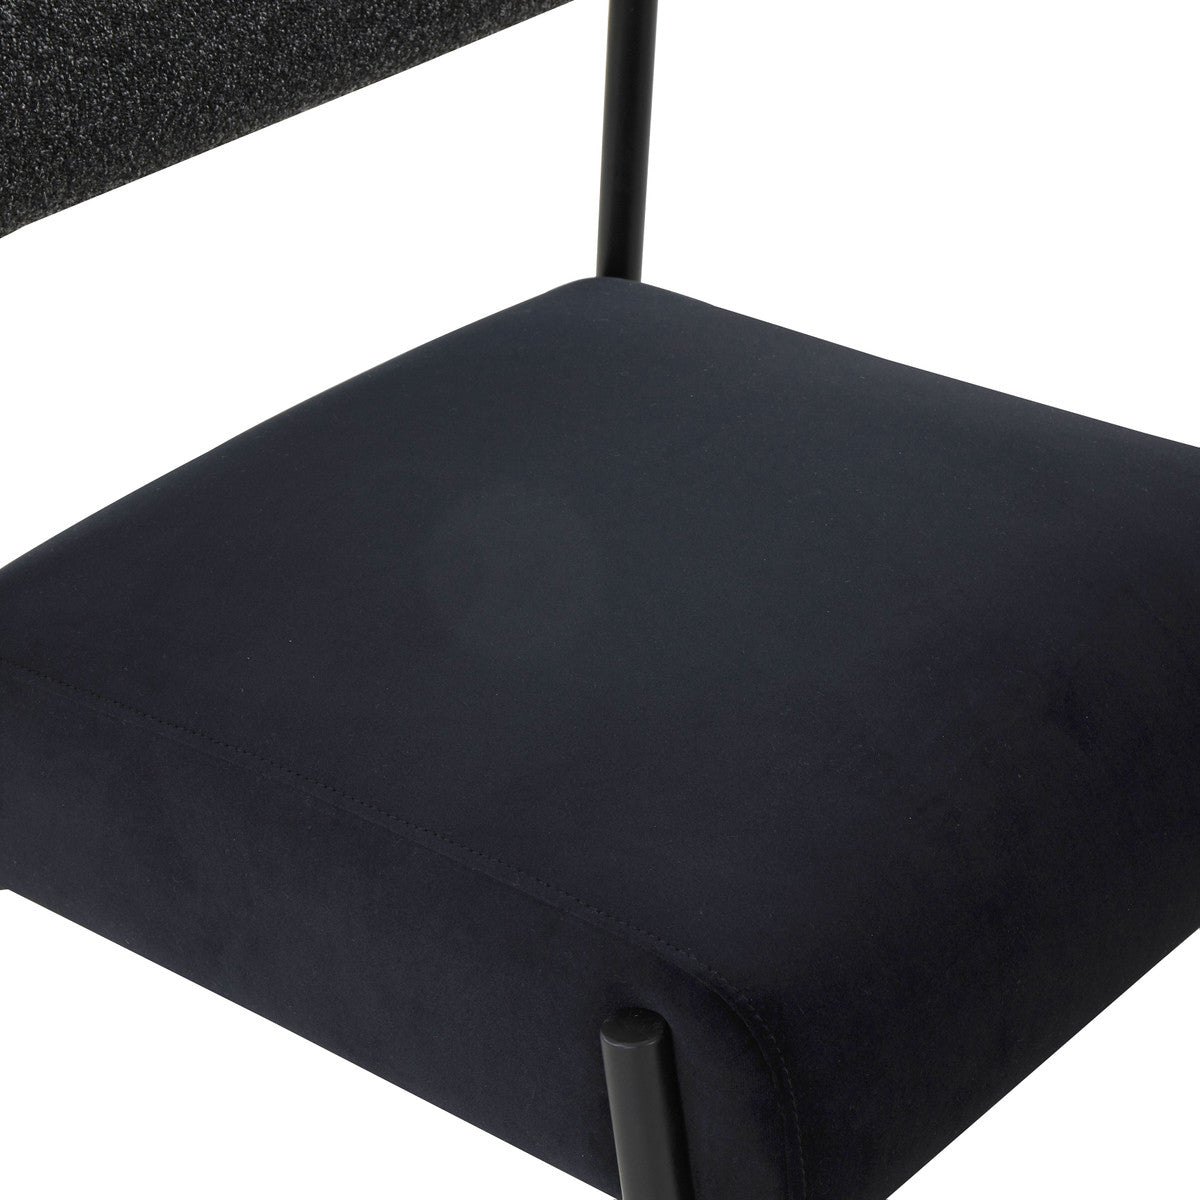 Jolene Black Velvet Dining Chair - Set of 2 | BeBoldFurniture